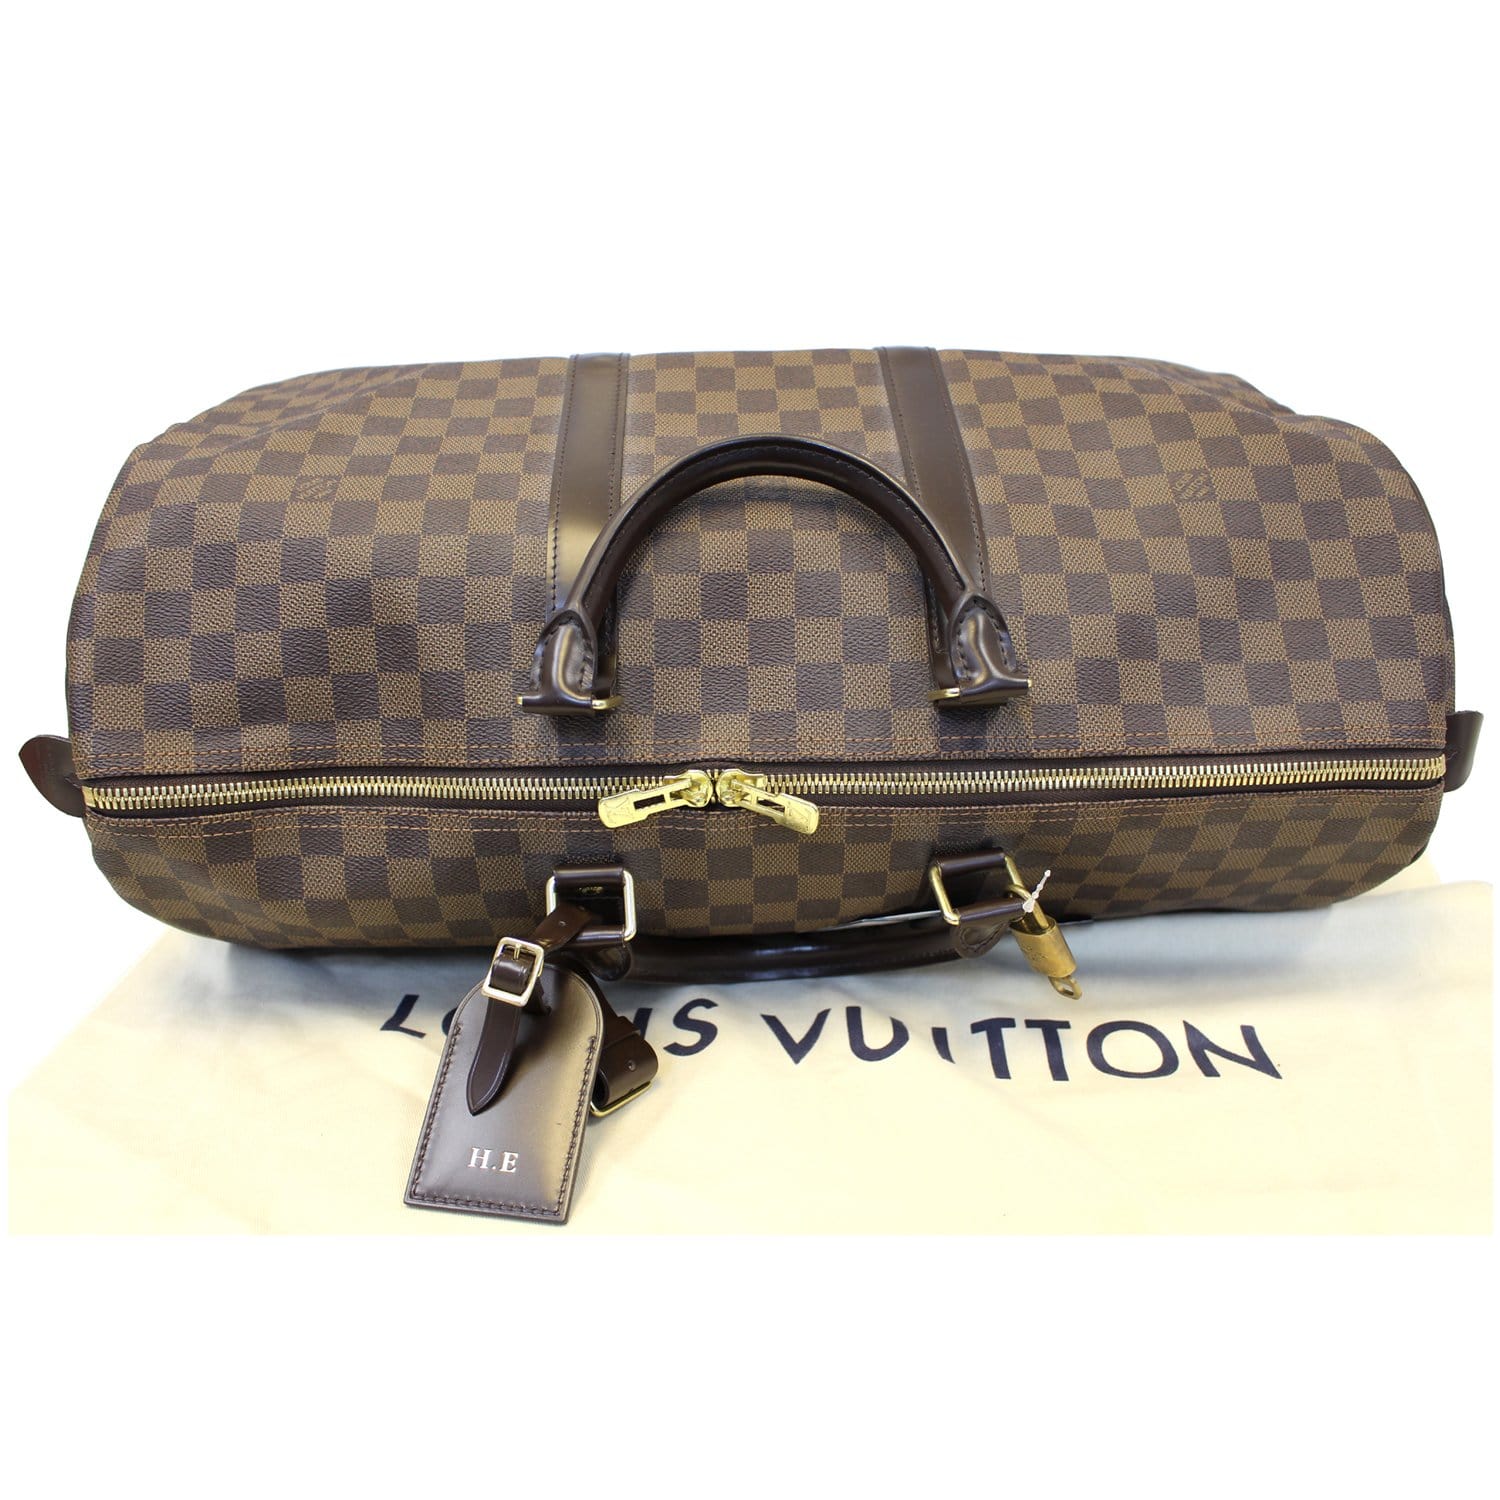 Louis Vuitton Keepall Bandoulière 50 Boston Bag(Silver)